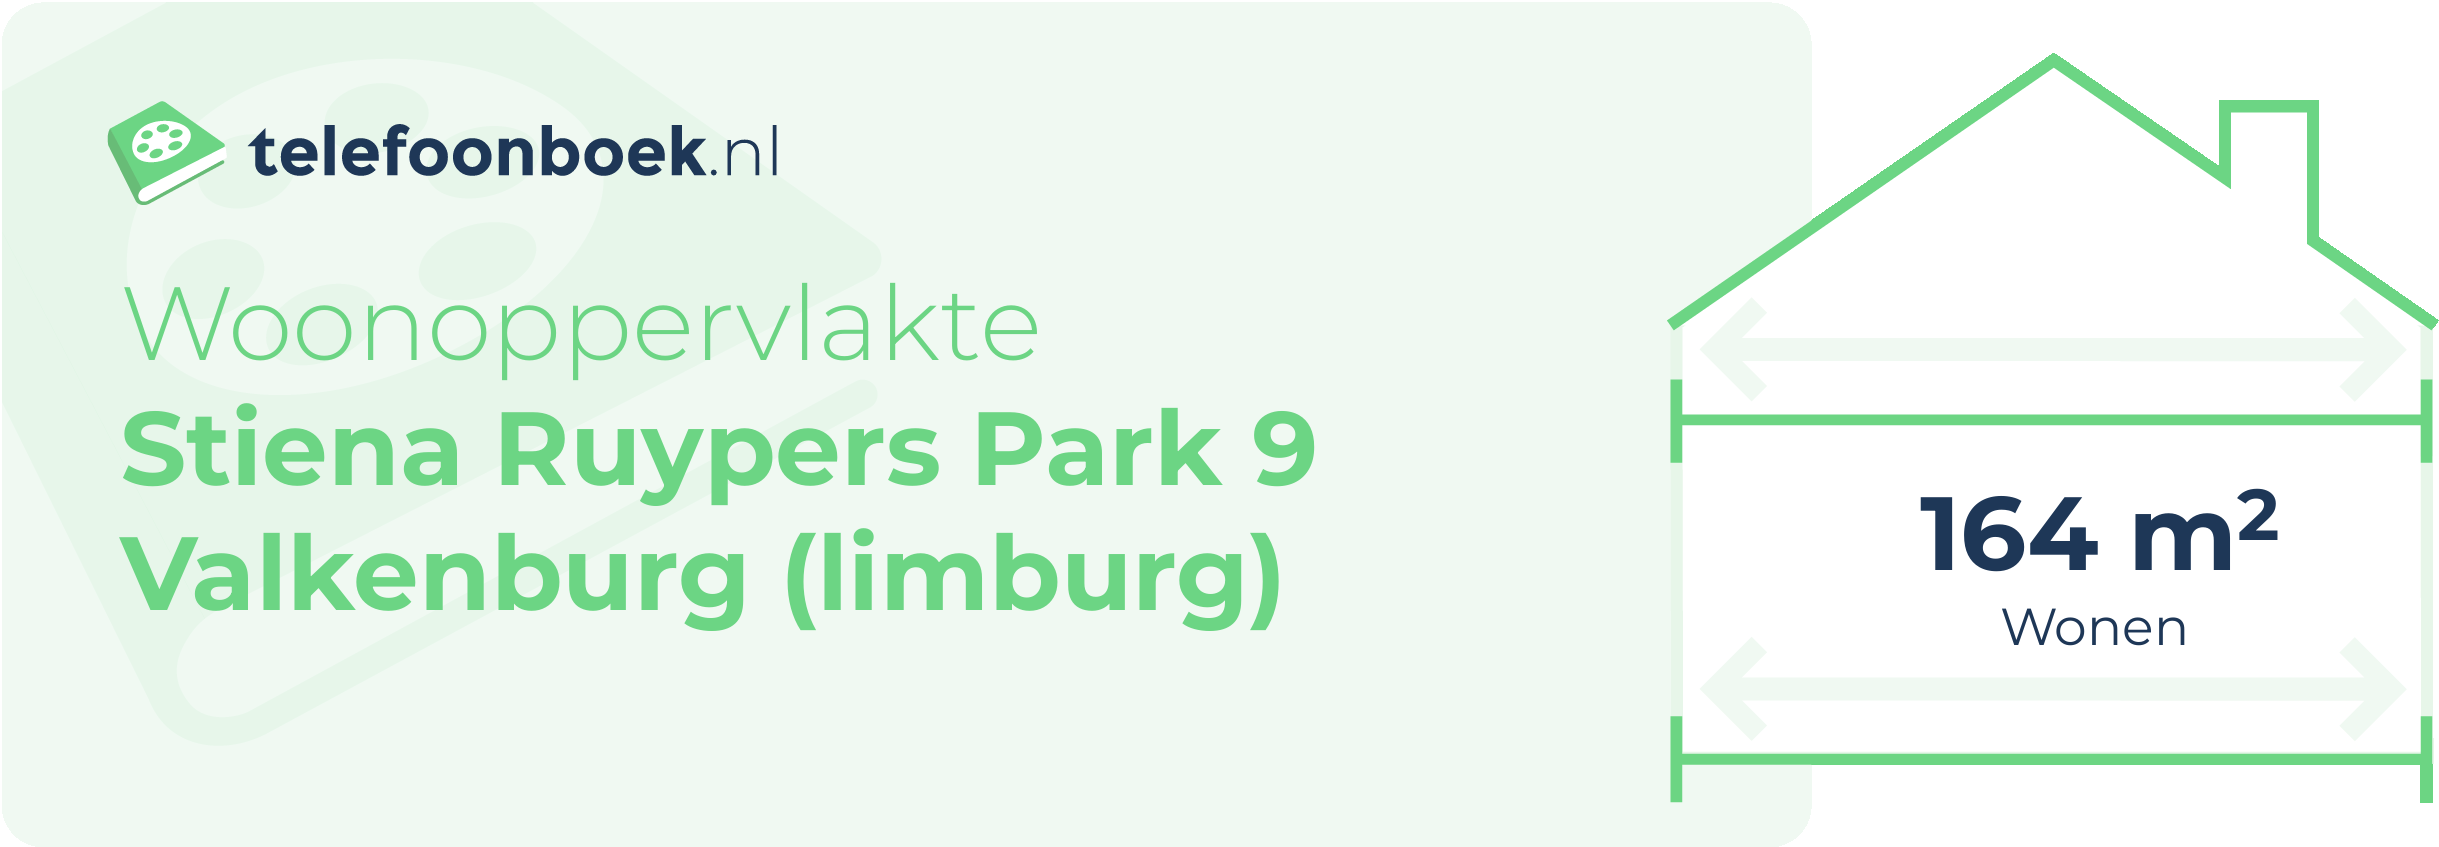 Woonoppervlakte Stiena Ruypers Park 9 Valkenburg (Limburg)